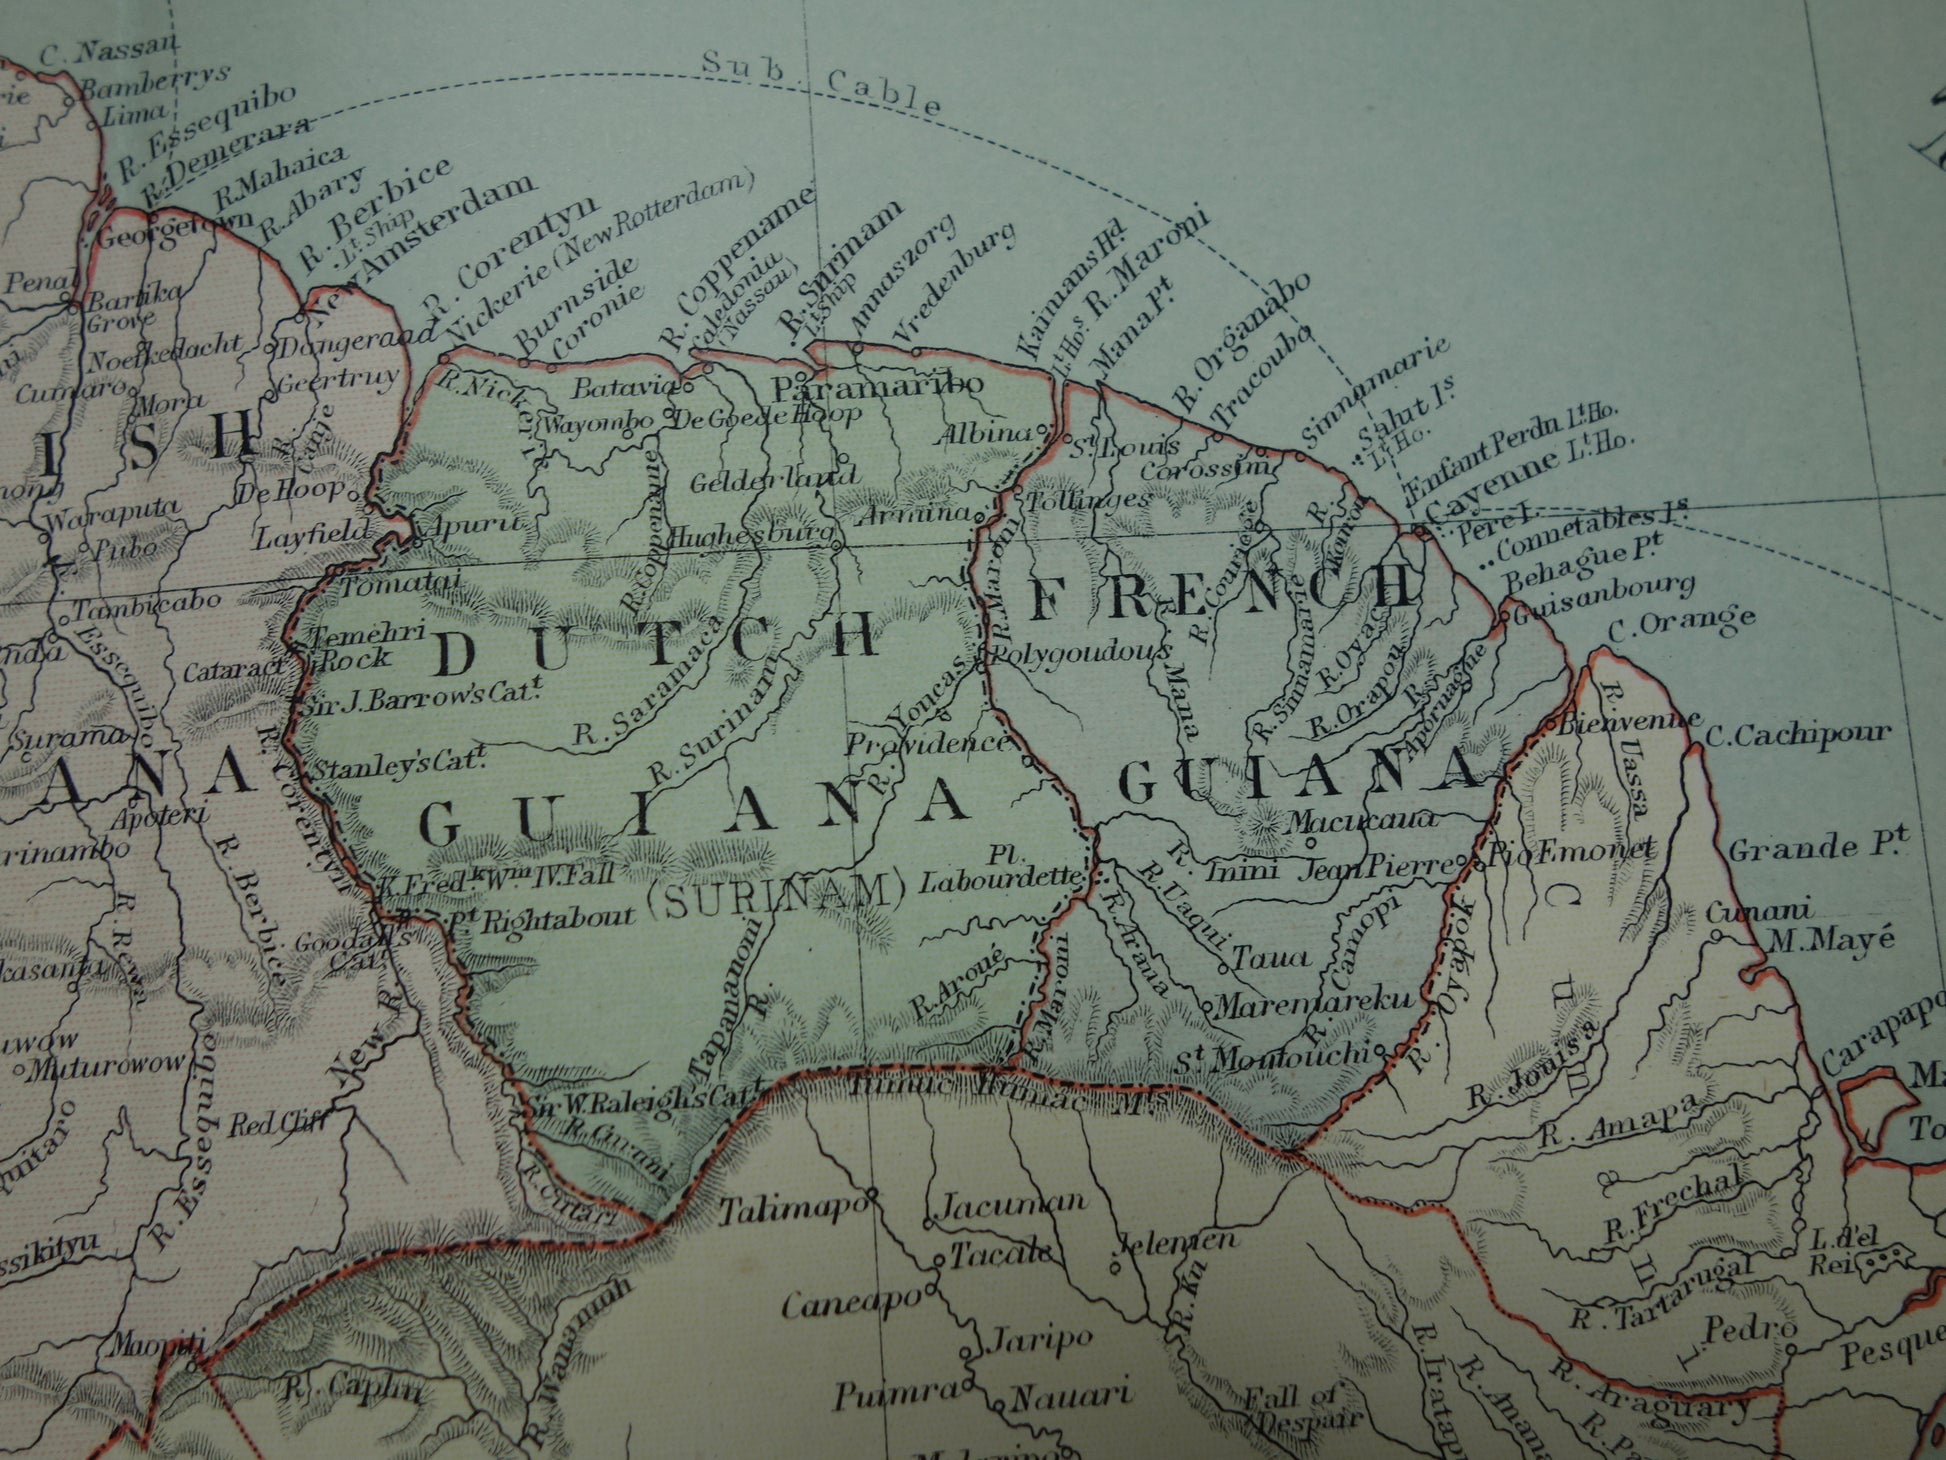 kaart van Suriname uit 1890 op een grotere landkaart